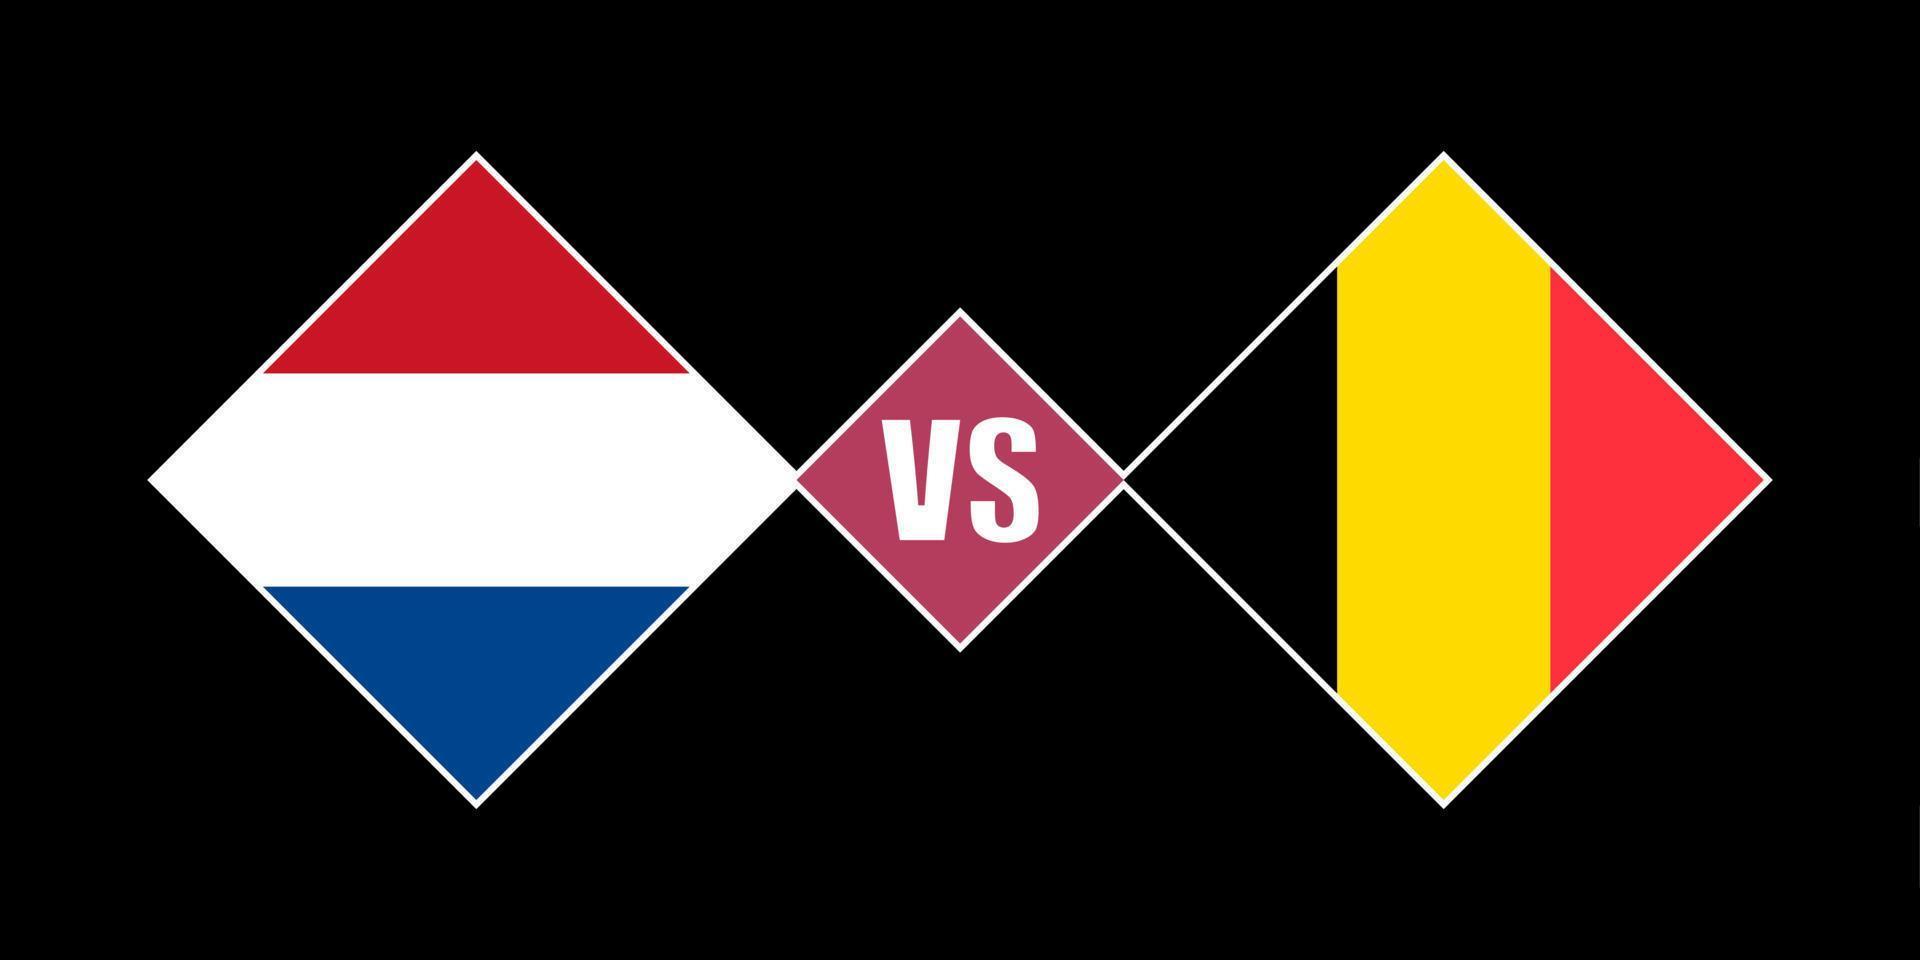 nederländerna mot belgien flagga begrepp. vektor illustration.